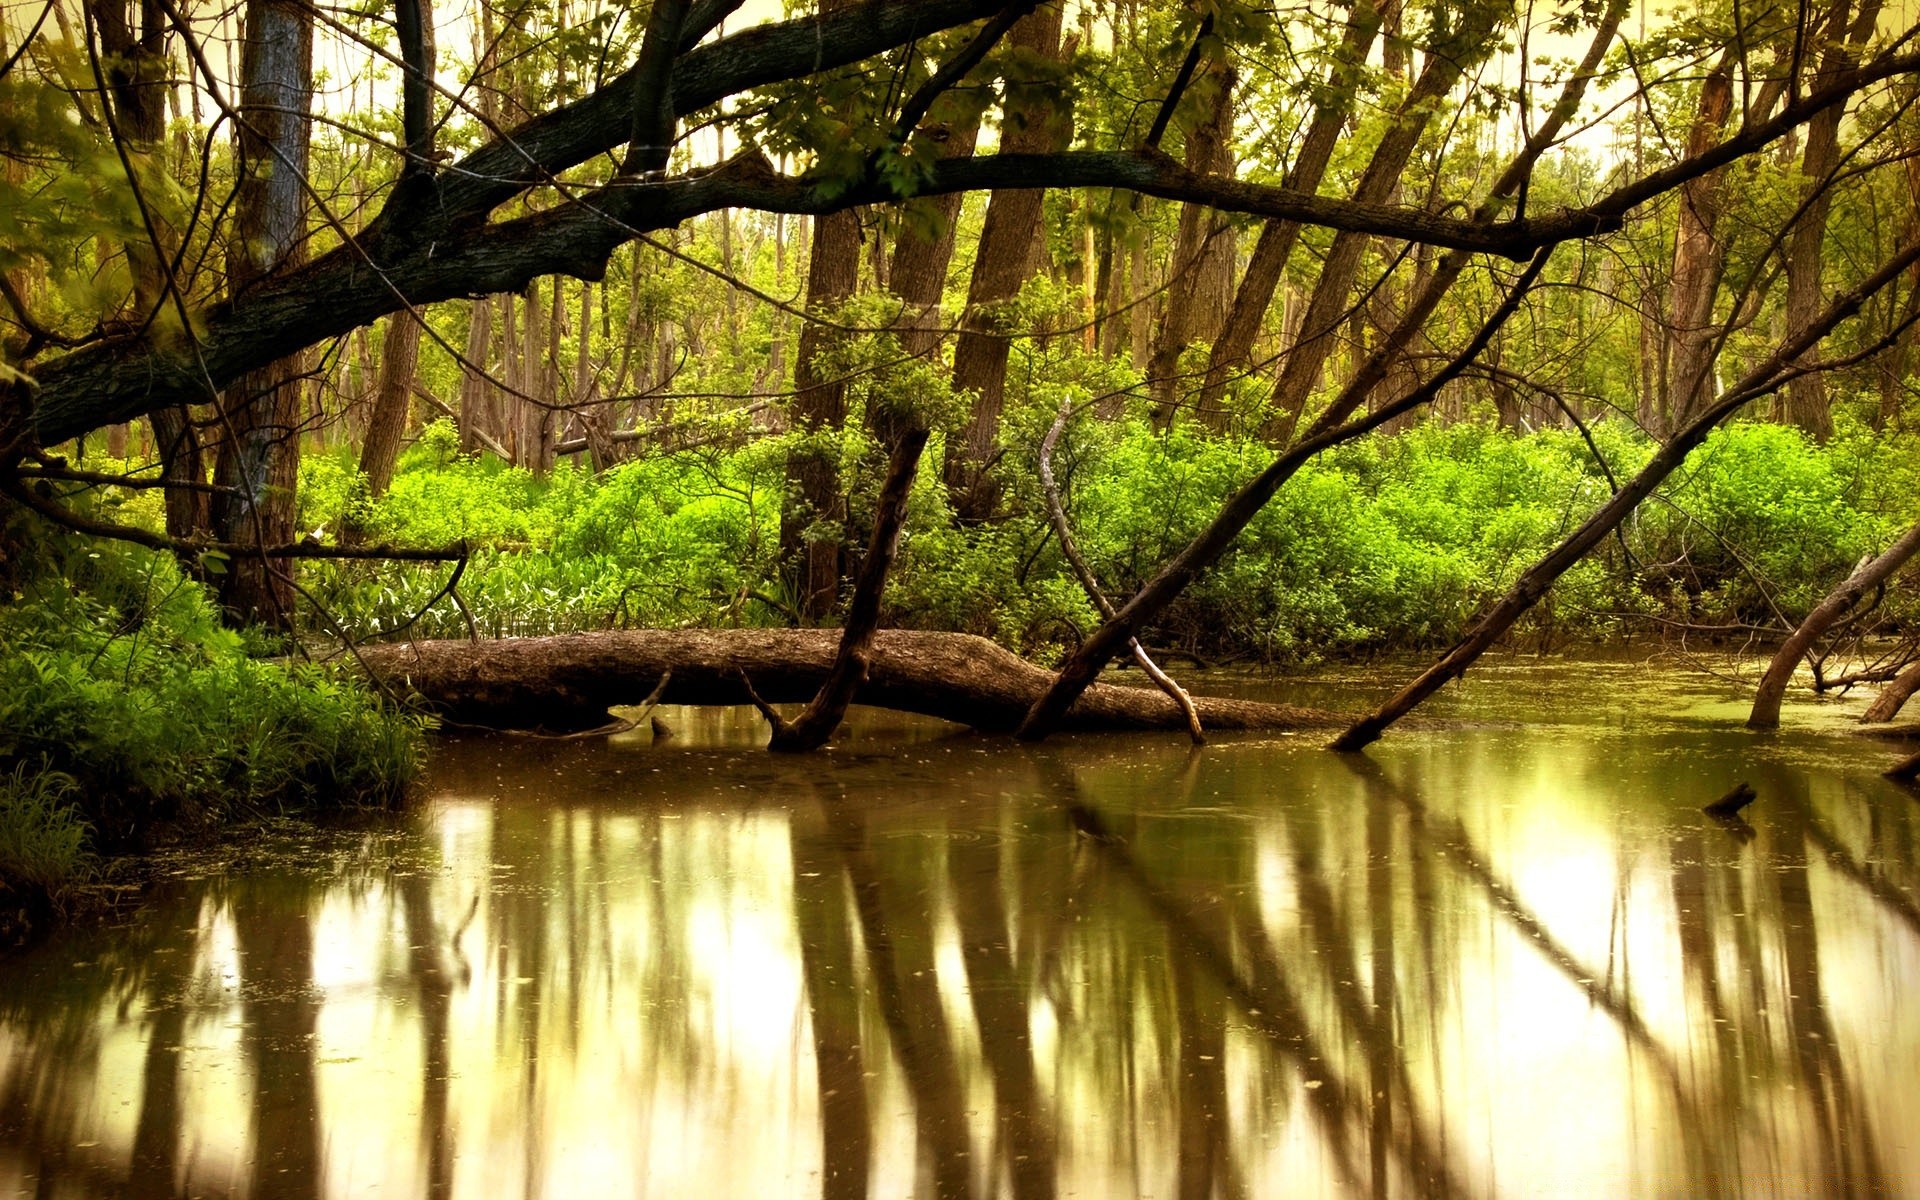 озера древесины воды природа пейзаж дерево лист река отражение парк хорошую погоду на открытом воздухе пышные солнце лето среды свет рассвет осень живописный